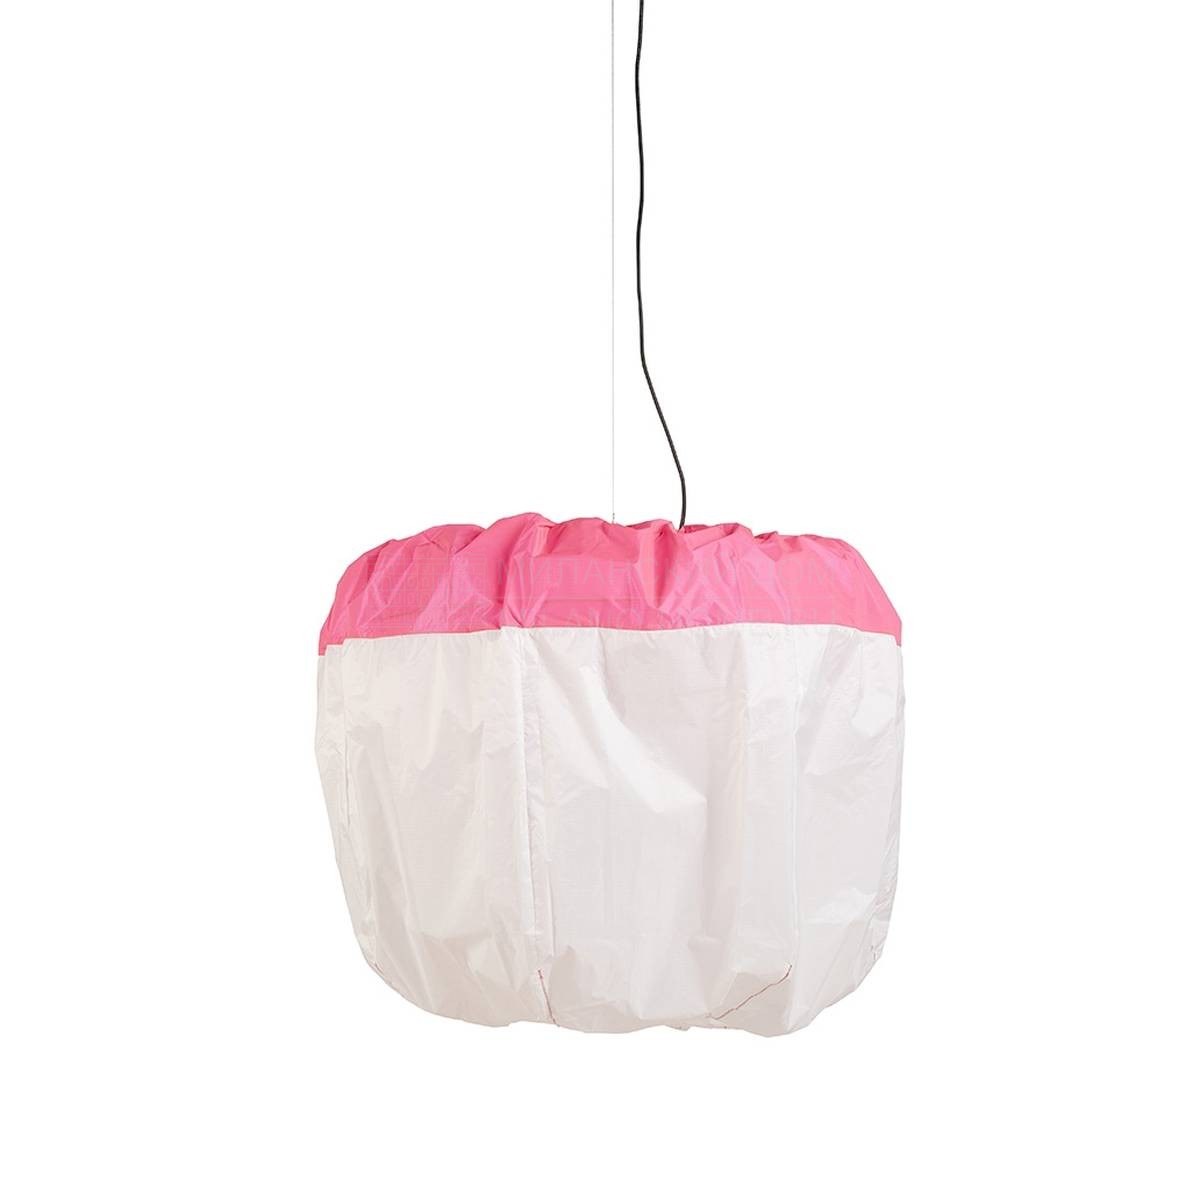 Подвесной светильник Spi outdoor pendant lamp gm pink из Франции фабрики FORESTIER